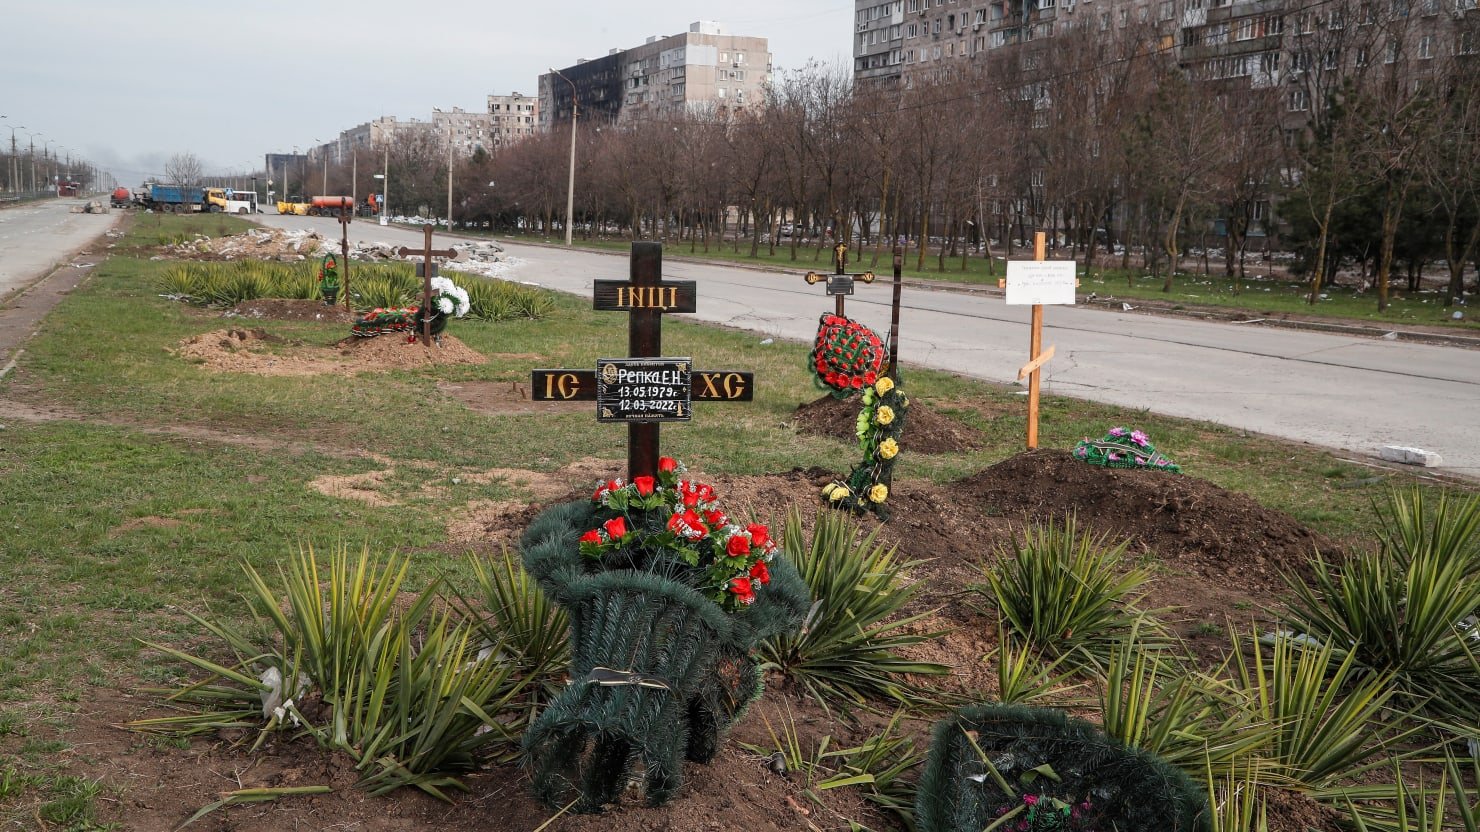 Los jardines son ahora cementerios en Mariupol mientras Rusia intensifica la guerra